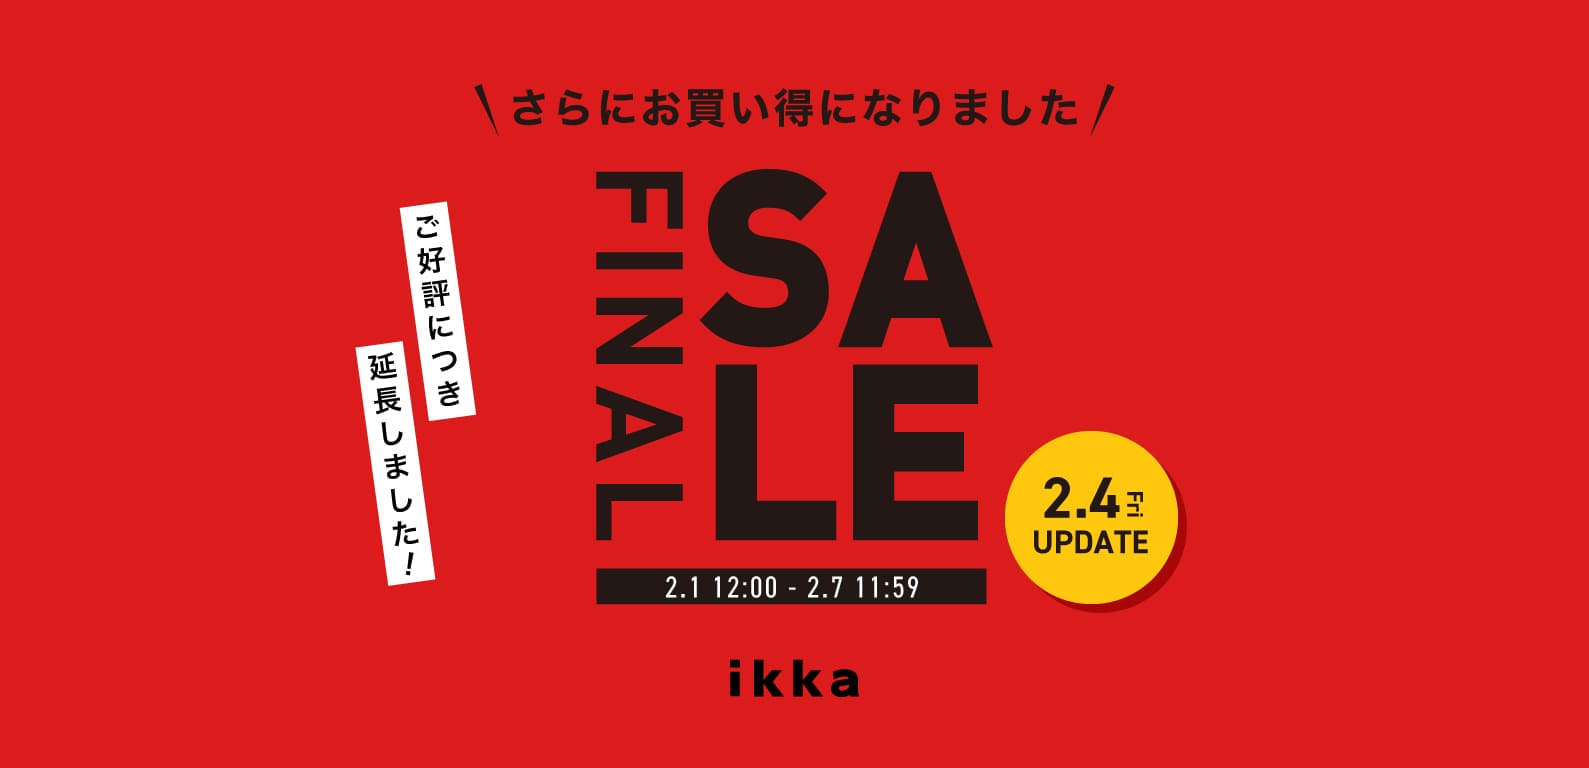 ikka | FINAL SALE2022